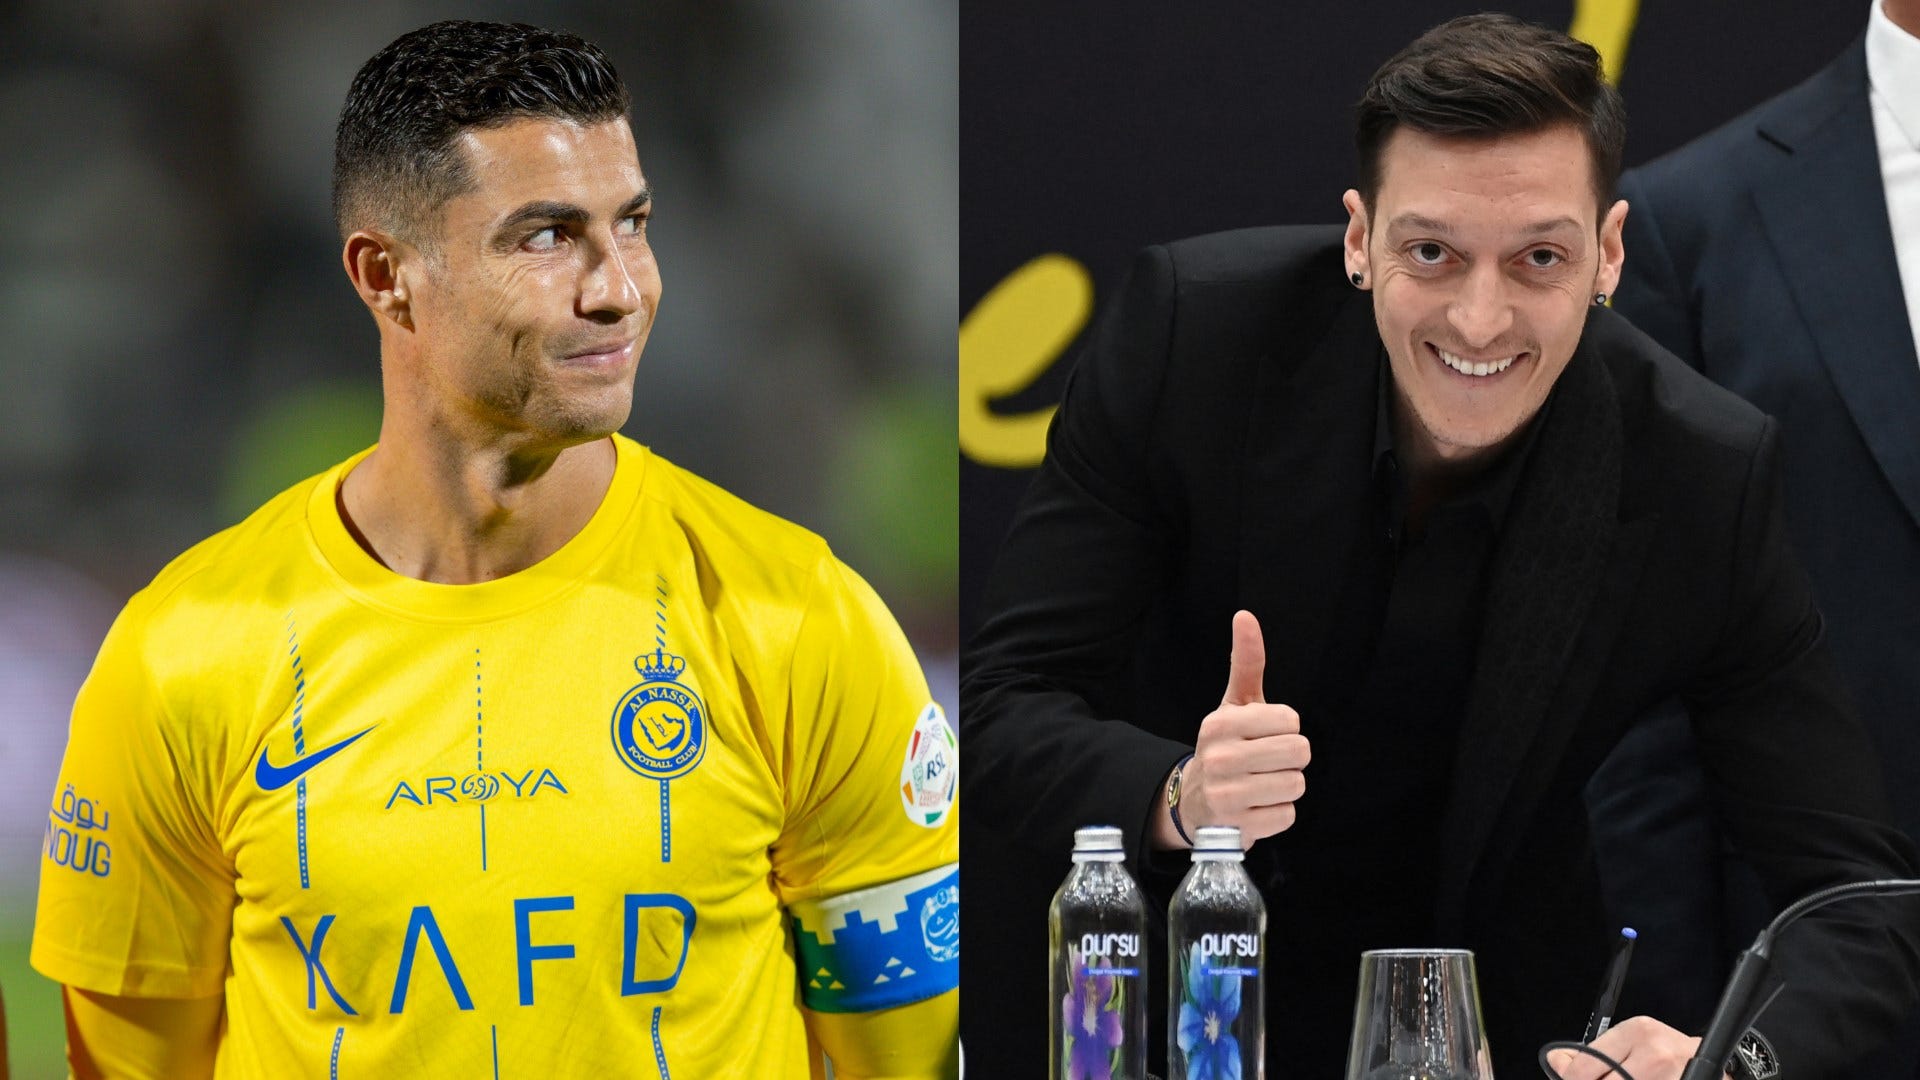 "Nicht schlecht, Bruder": Cristiano Ronaldo staunt bei Instagram über Mesut Özil